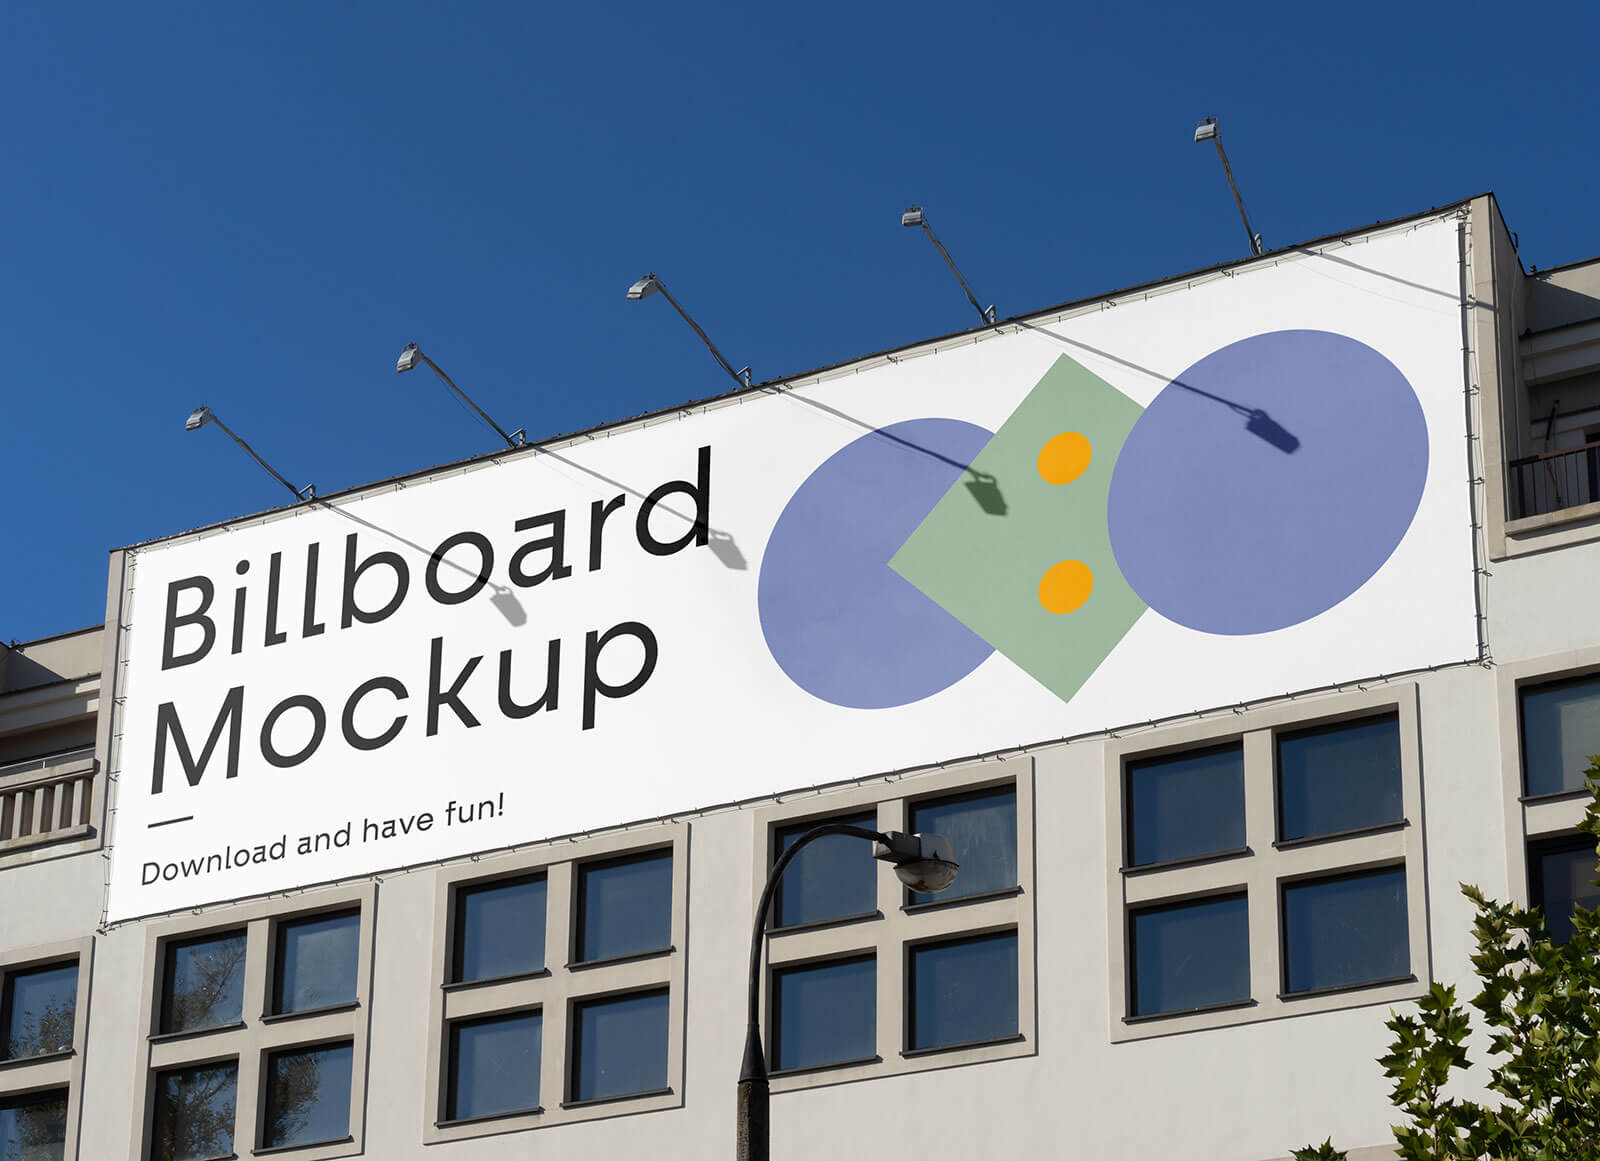 Free-Building-Billboard-Mockup-PSD